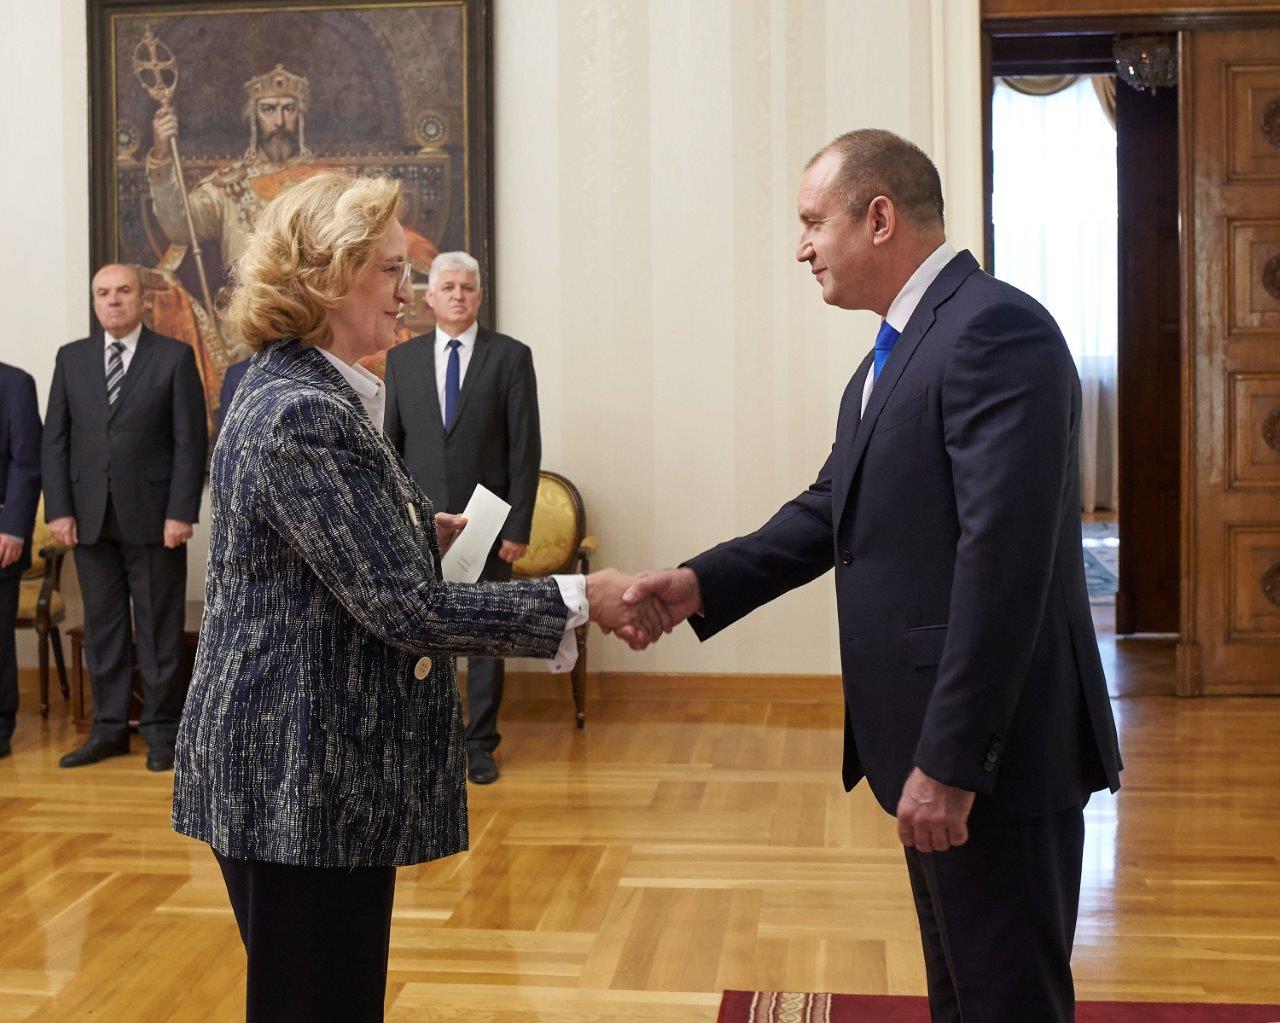 Der Präsident der Bulgarien nahm das Beglaubigungsschreiben von neuer Botschafterin des Souveränen Malteserordens